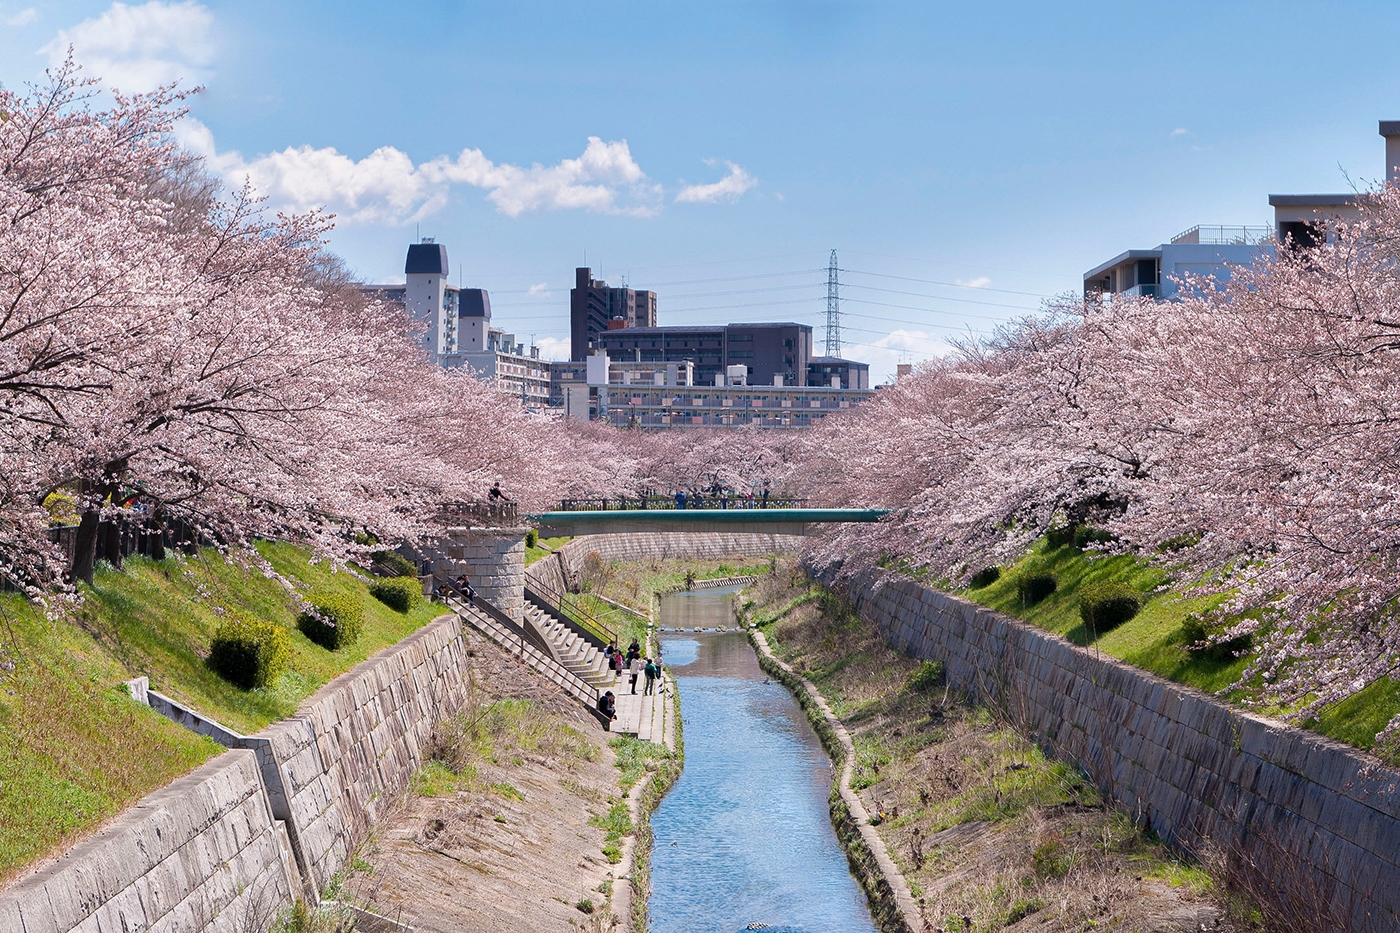 Rencontre de la nature et de l'urbanisme : les sakura embellissent la digue du fleuve dans un cadre paisible